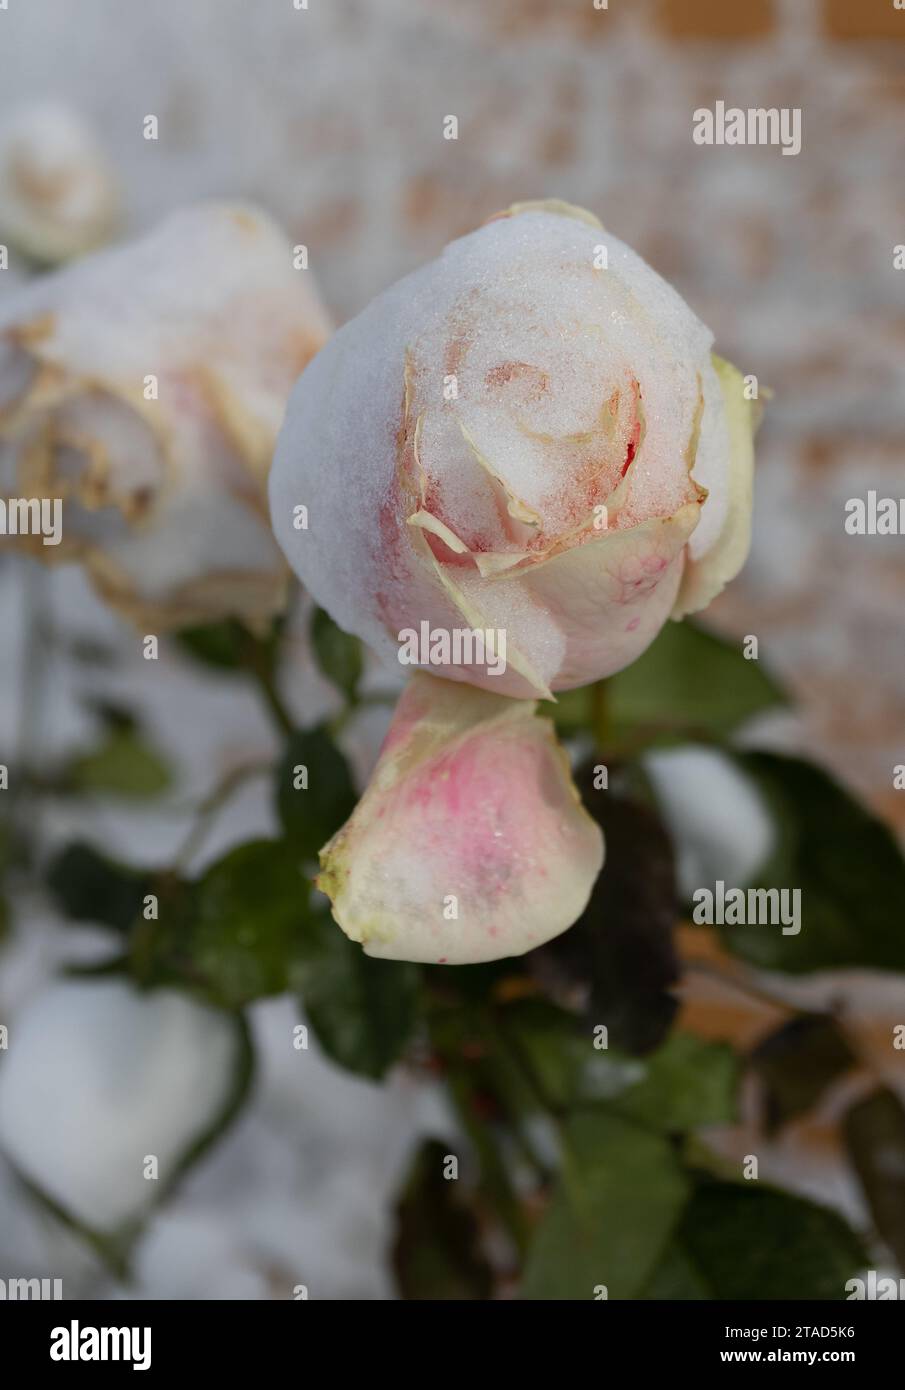 Gefrorene Blumen. Rosensträucher im Schnee. Weiße Blumen und weißer Schnee. Rosensträucher nach Schneefall und plötzlichem Kälteeinbruch. Extreme Kälte und Pflanzen. Ansicht von W Stockfoto